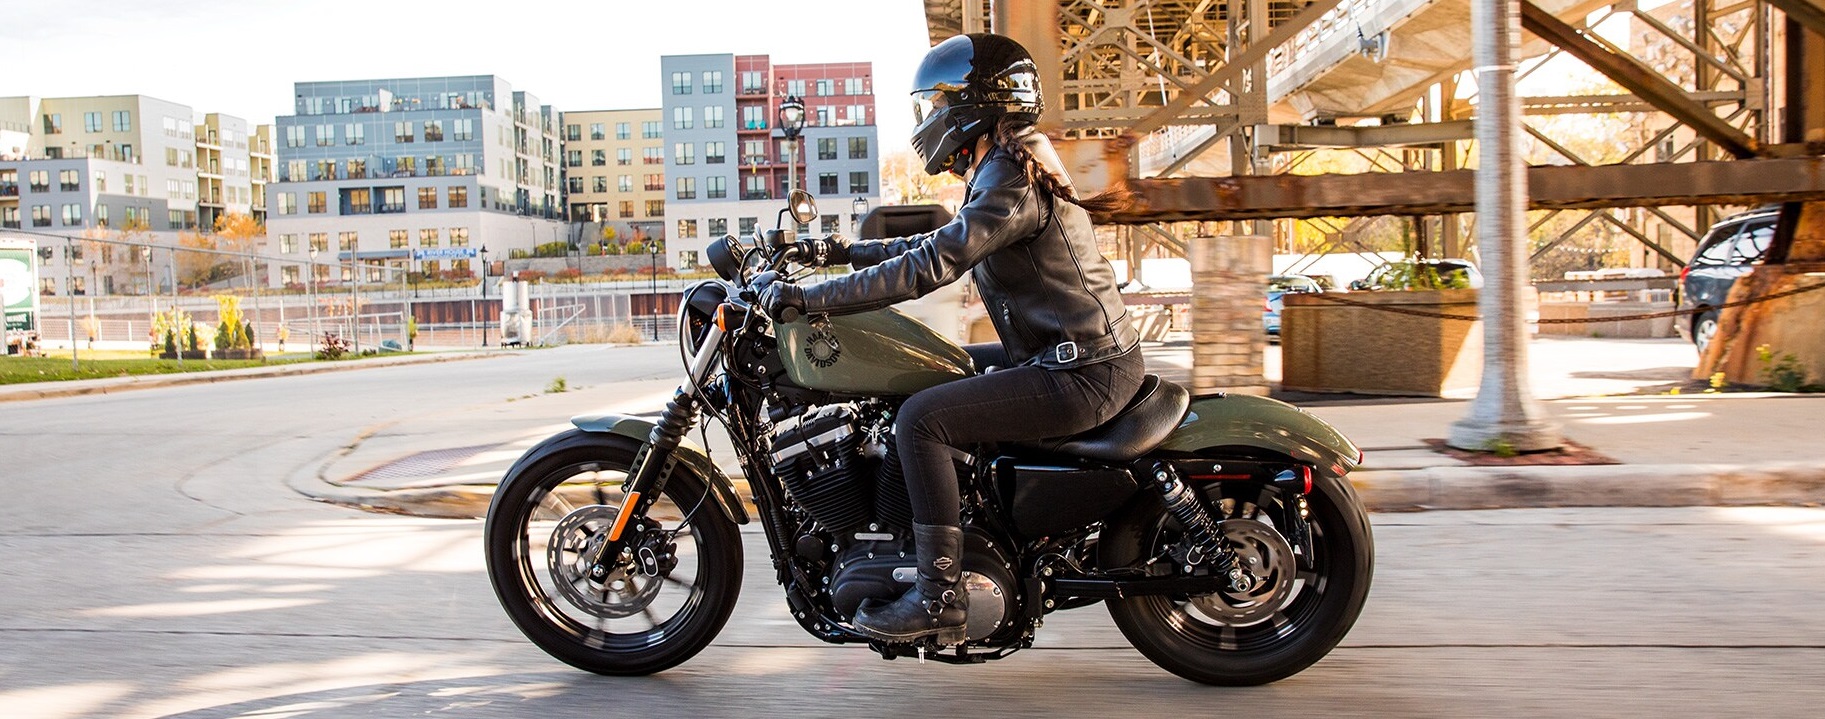 2021 Harley-Davidson® Iron 883™ near Swanzey NH